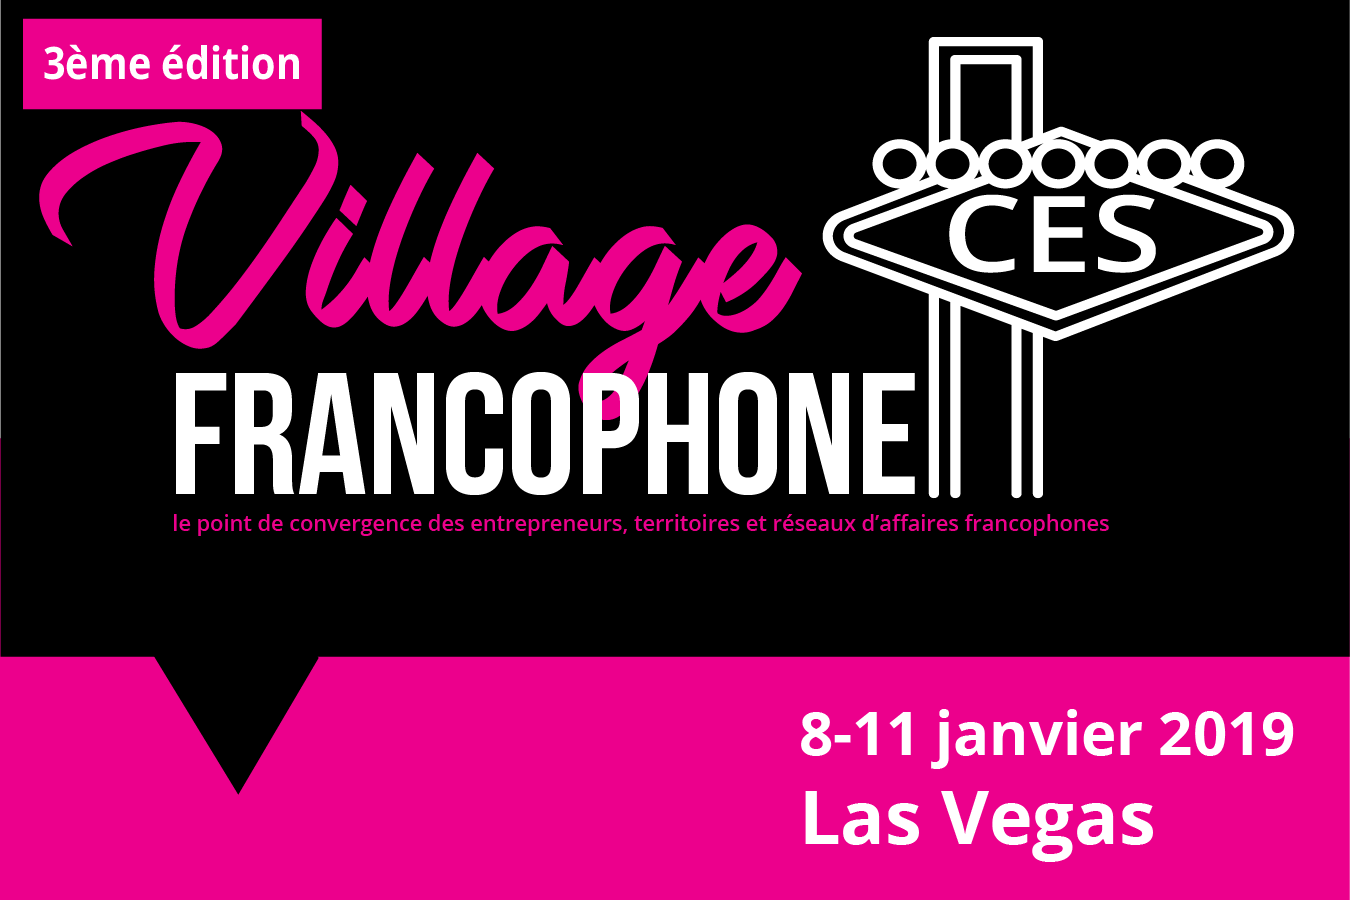 Village Francophone